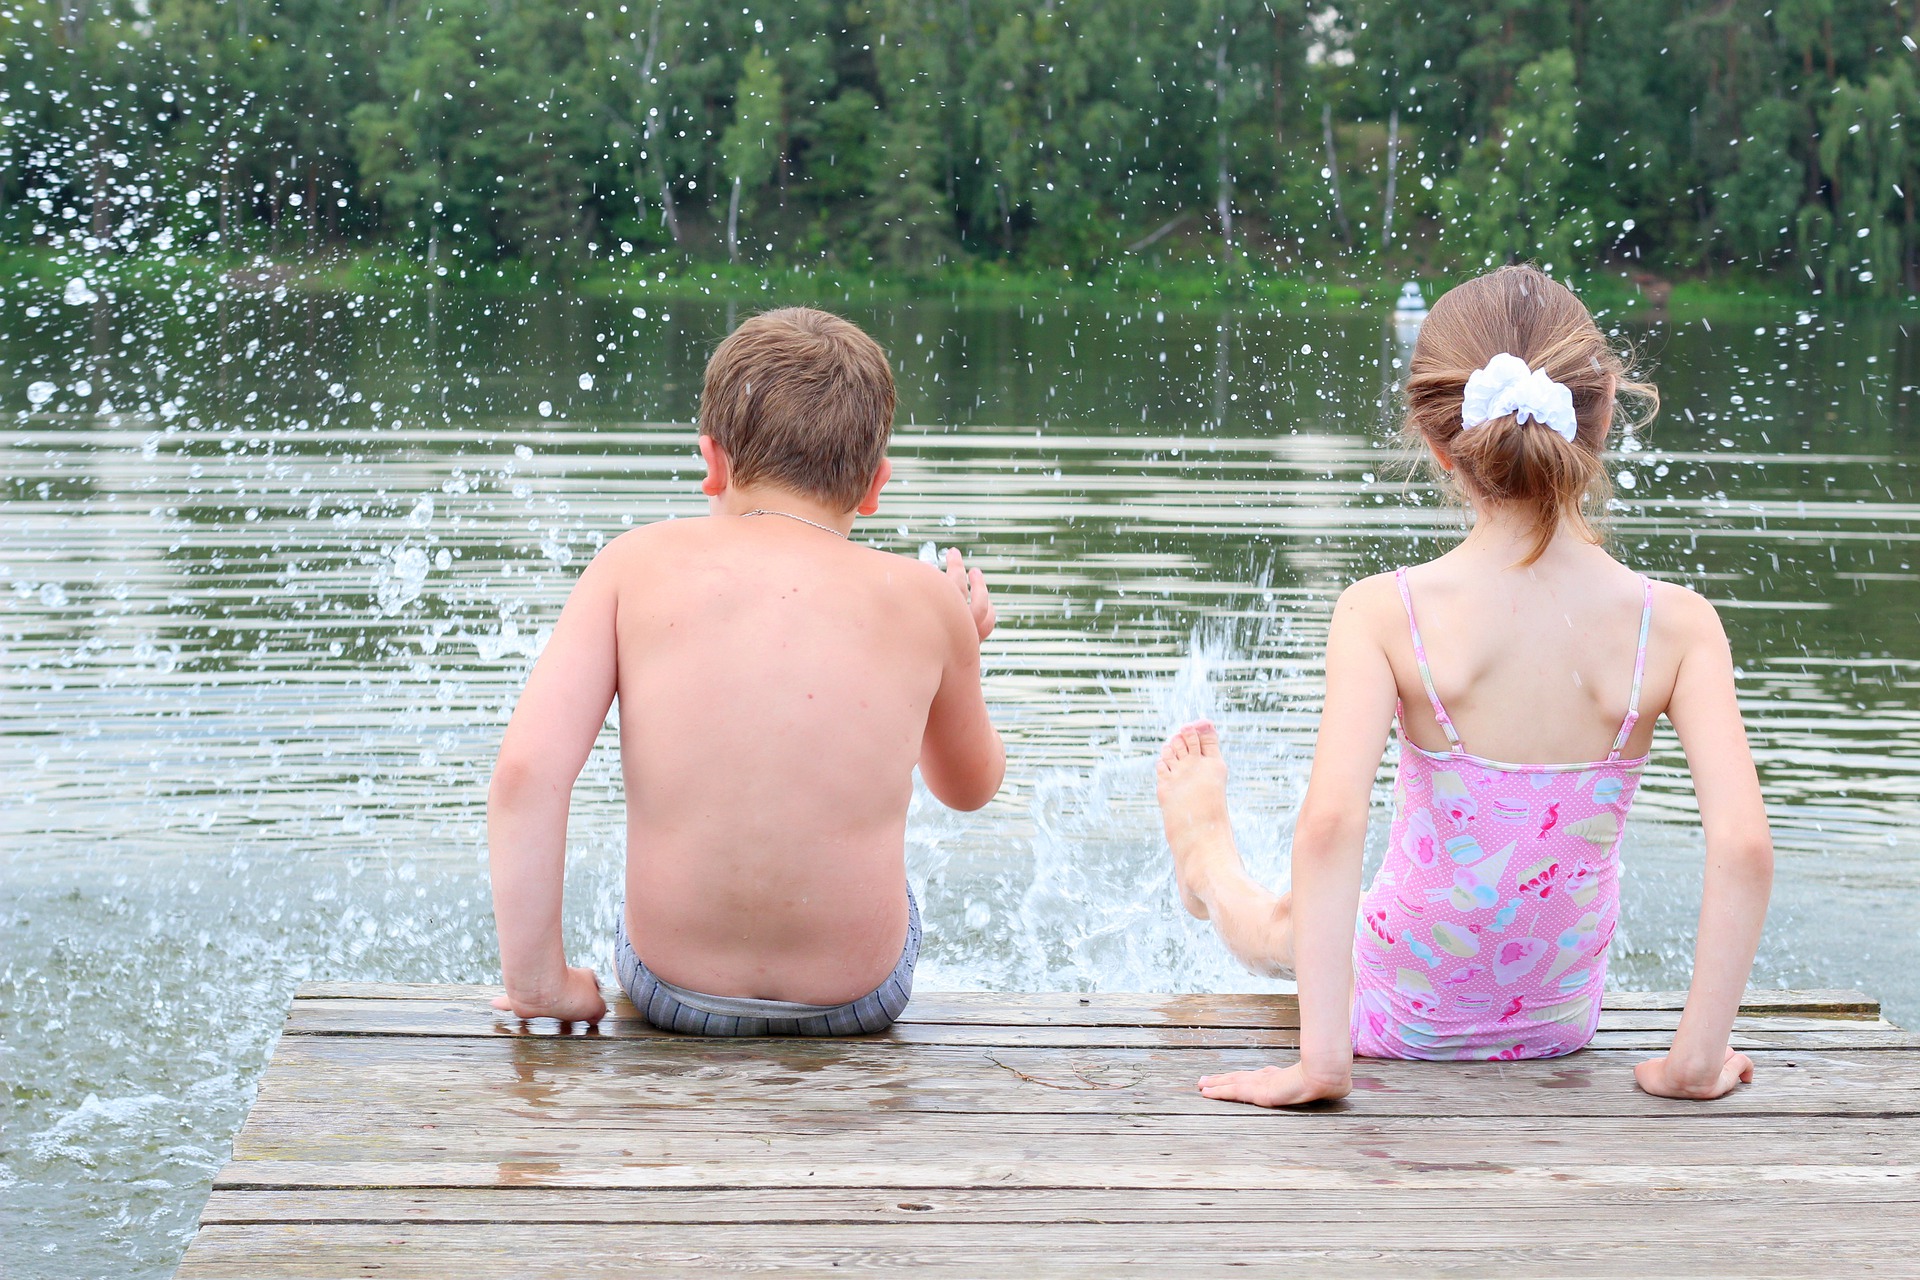 Воронежцам разрешили купаться в Усманке – уровень загрязнения в реке снижается - фото 1